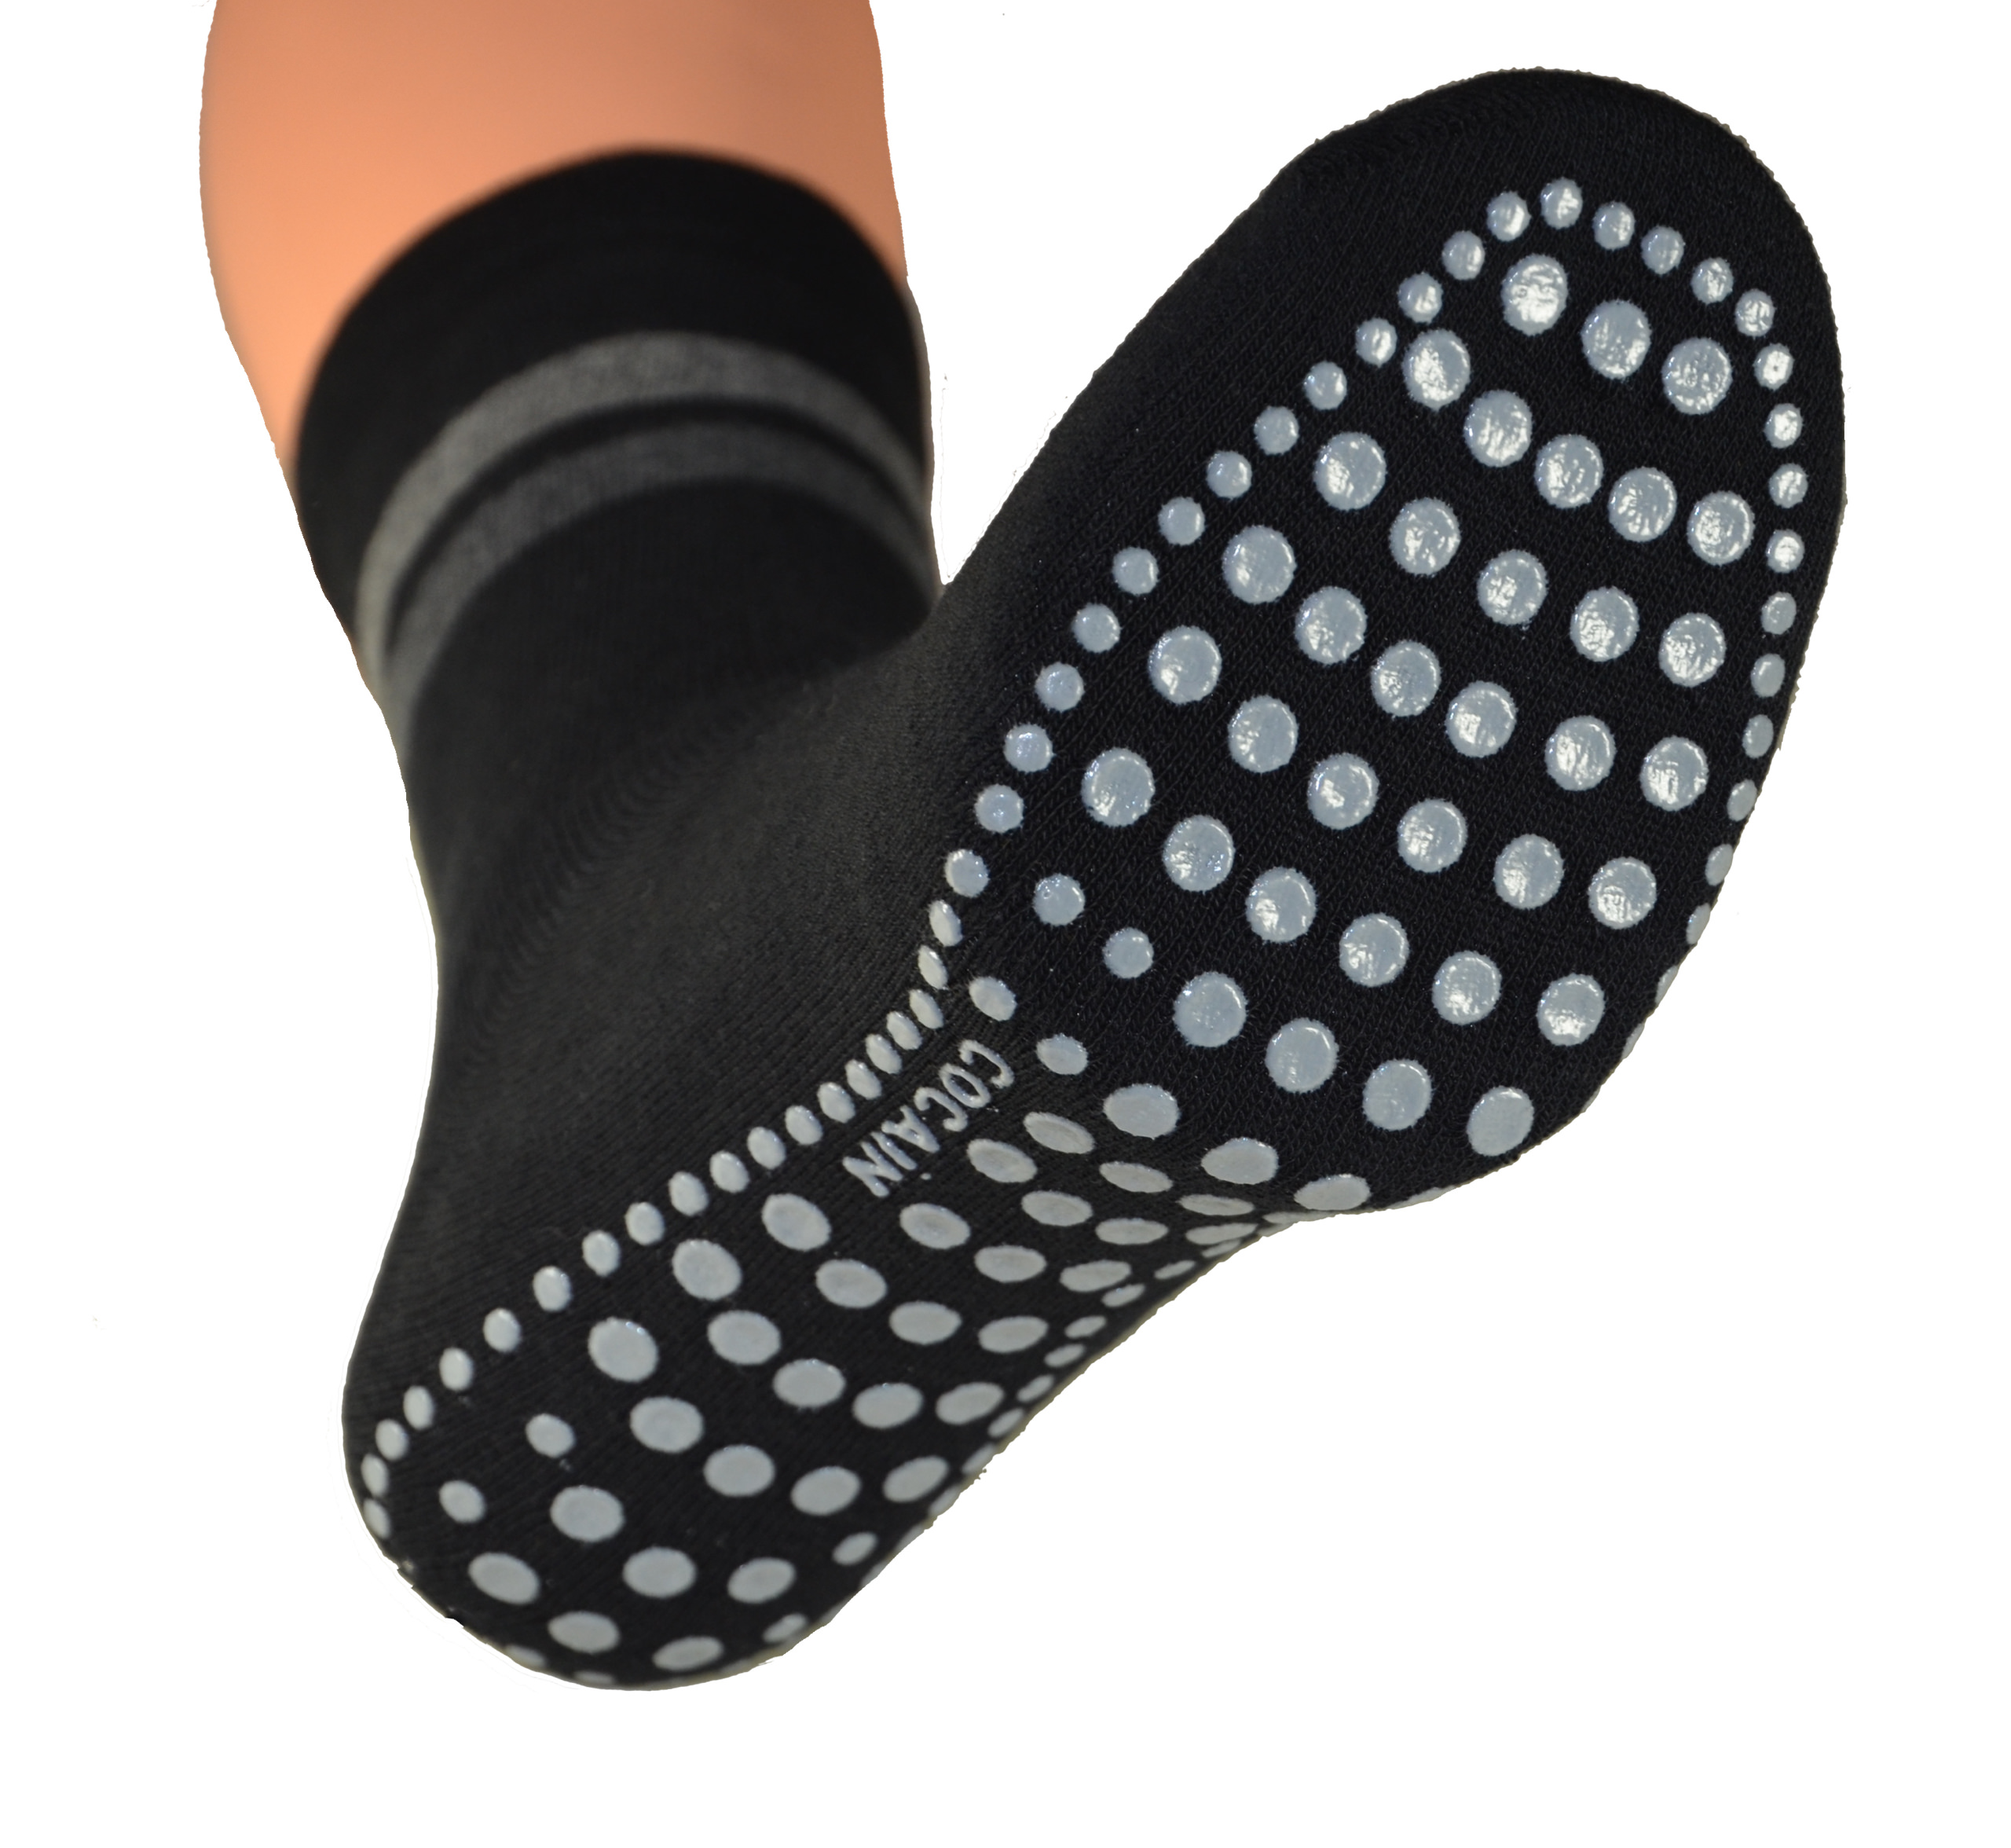 Inicio Lässige Socken Würfel Poker Karte gedruckt Anti-Rutsch-atmungsaktive Baumwolle Strumpfwaren Schuhe Zubehör 